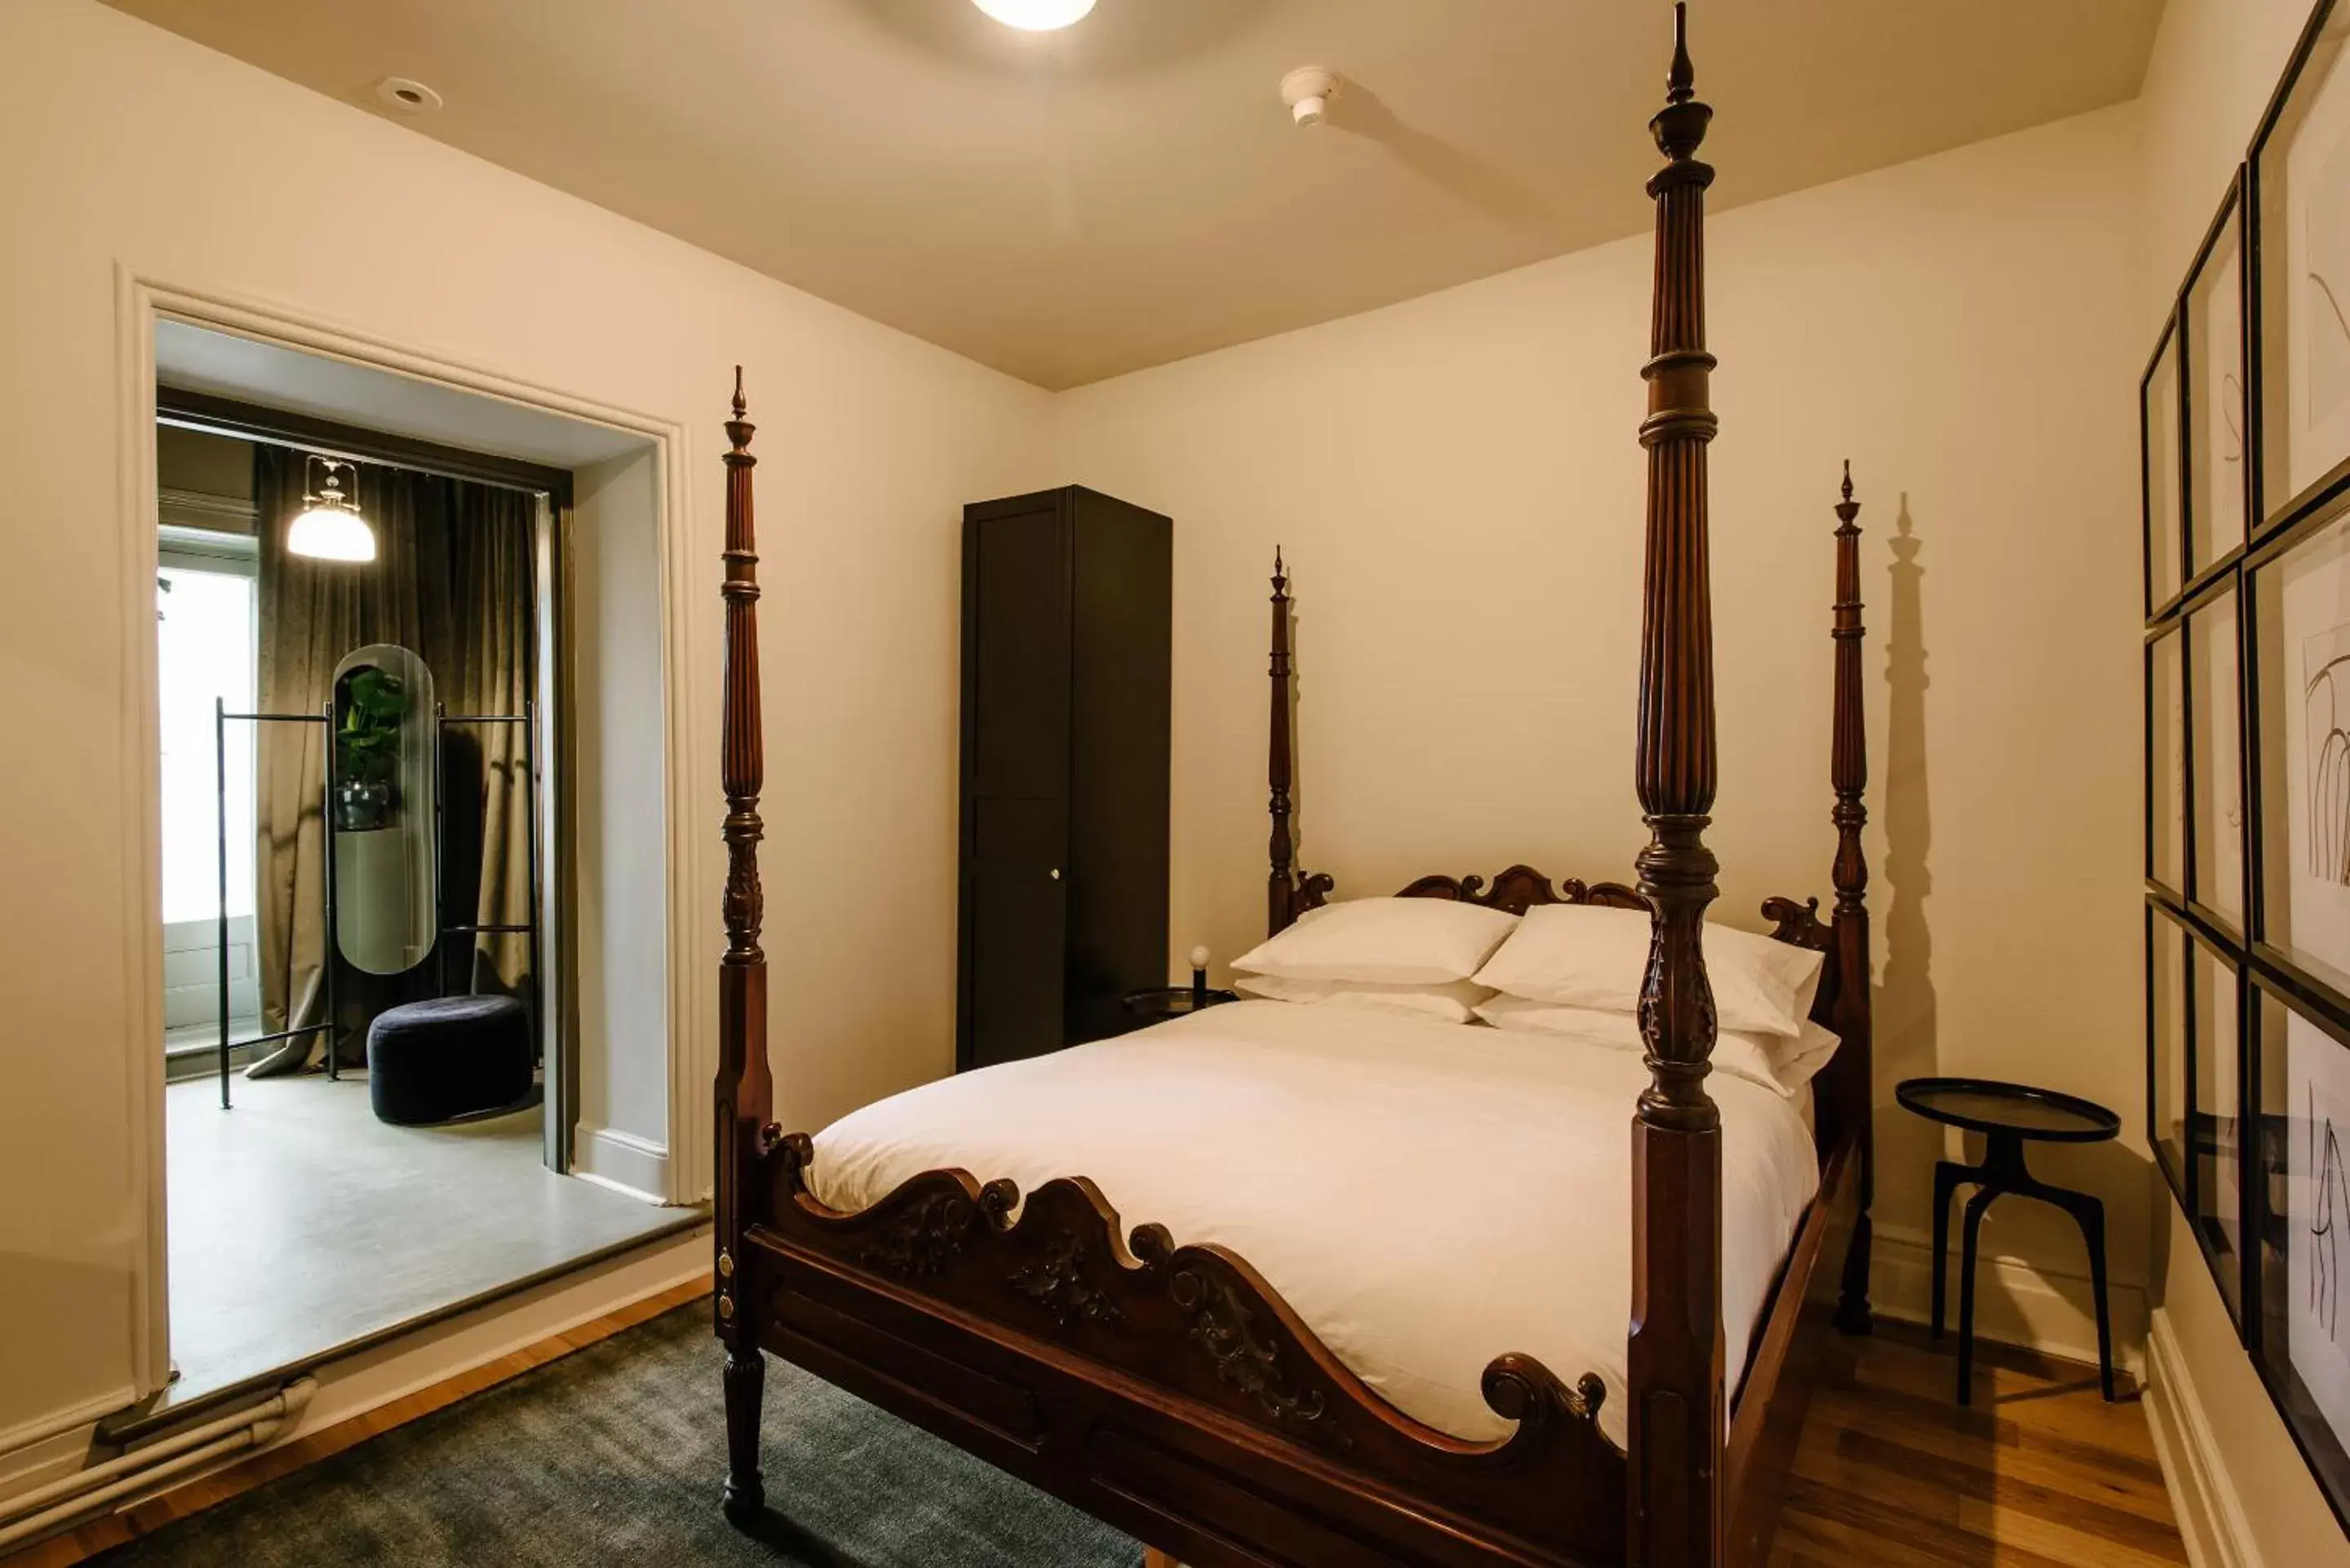 Deluxe Queen Room with Balcony in Rosemount Inn